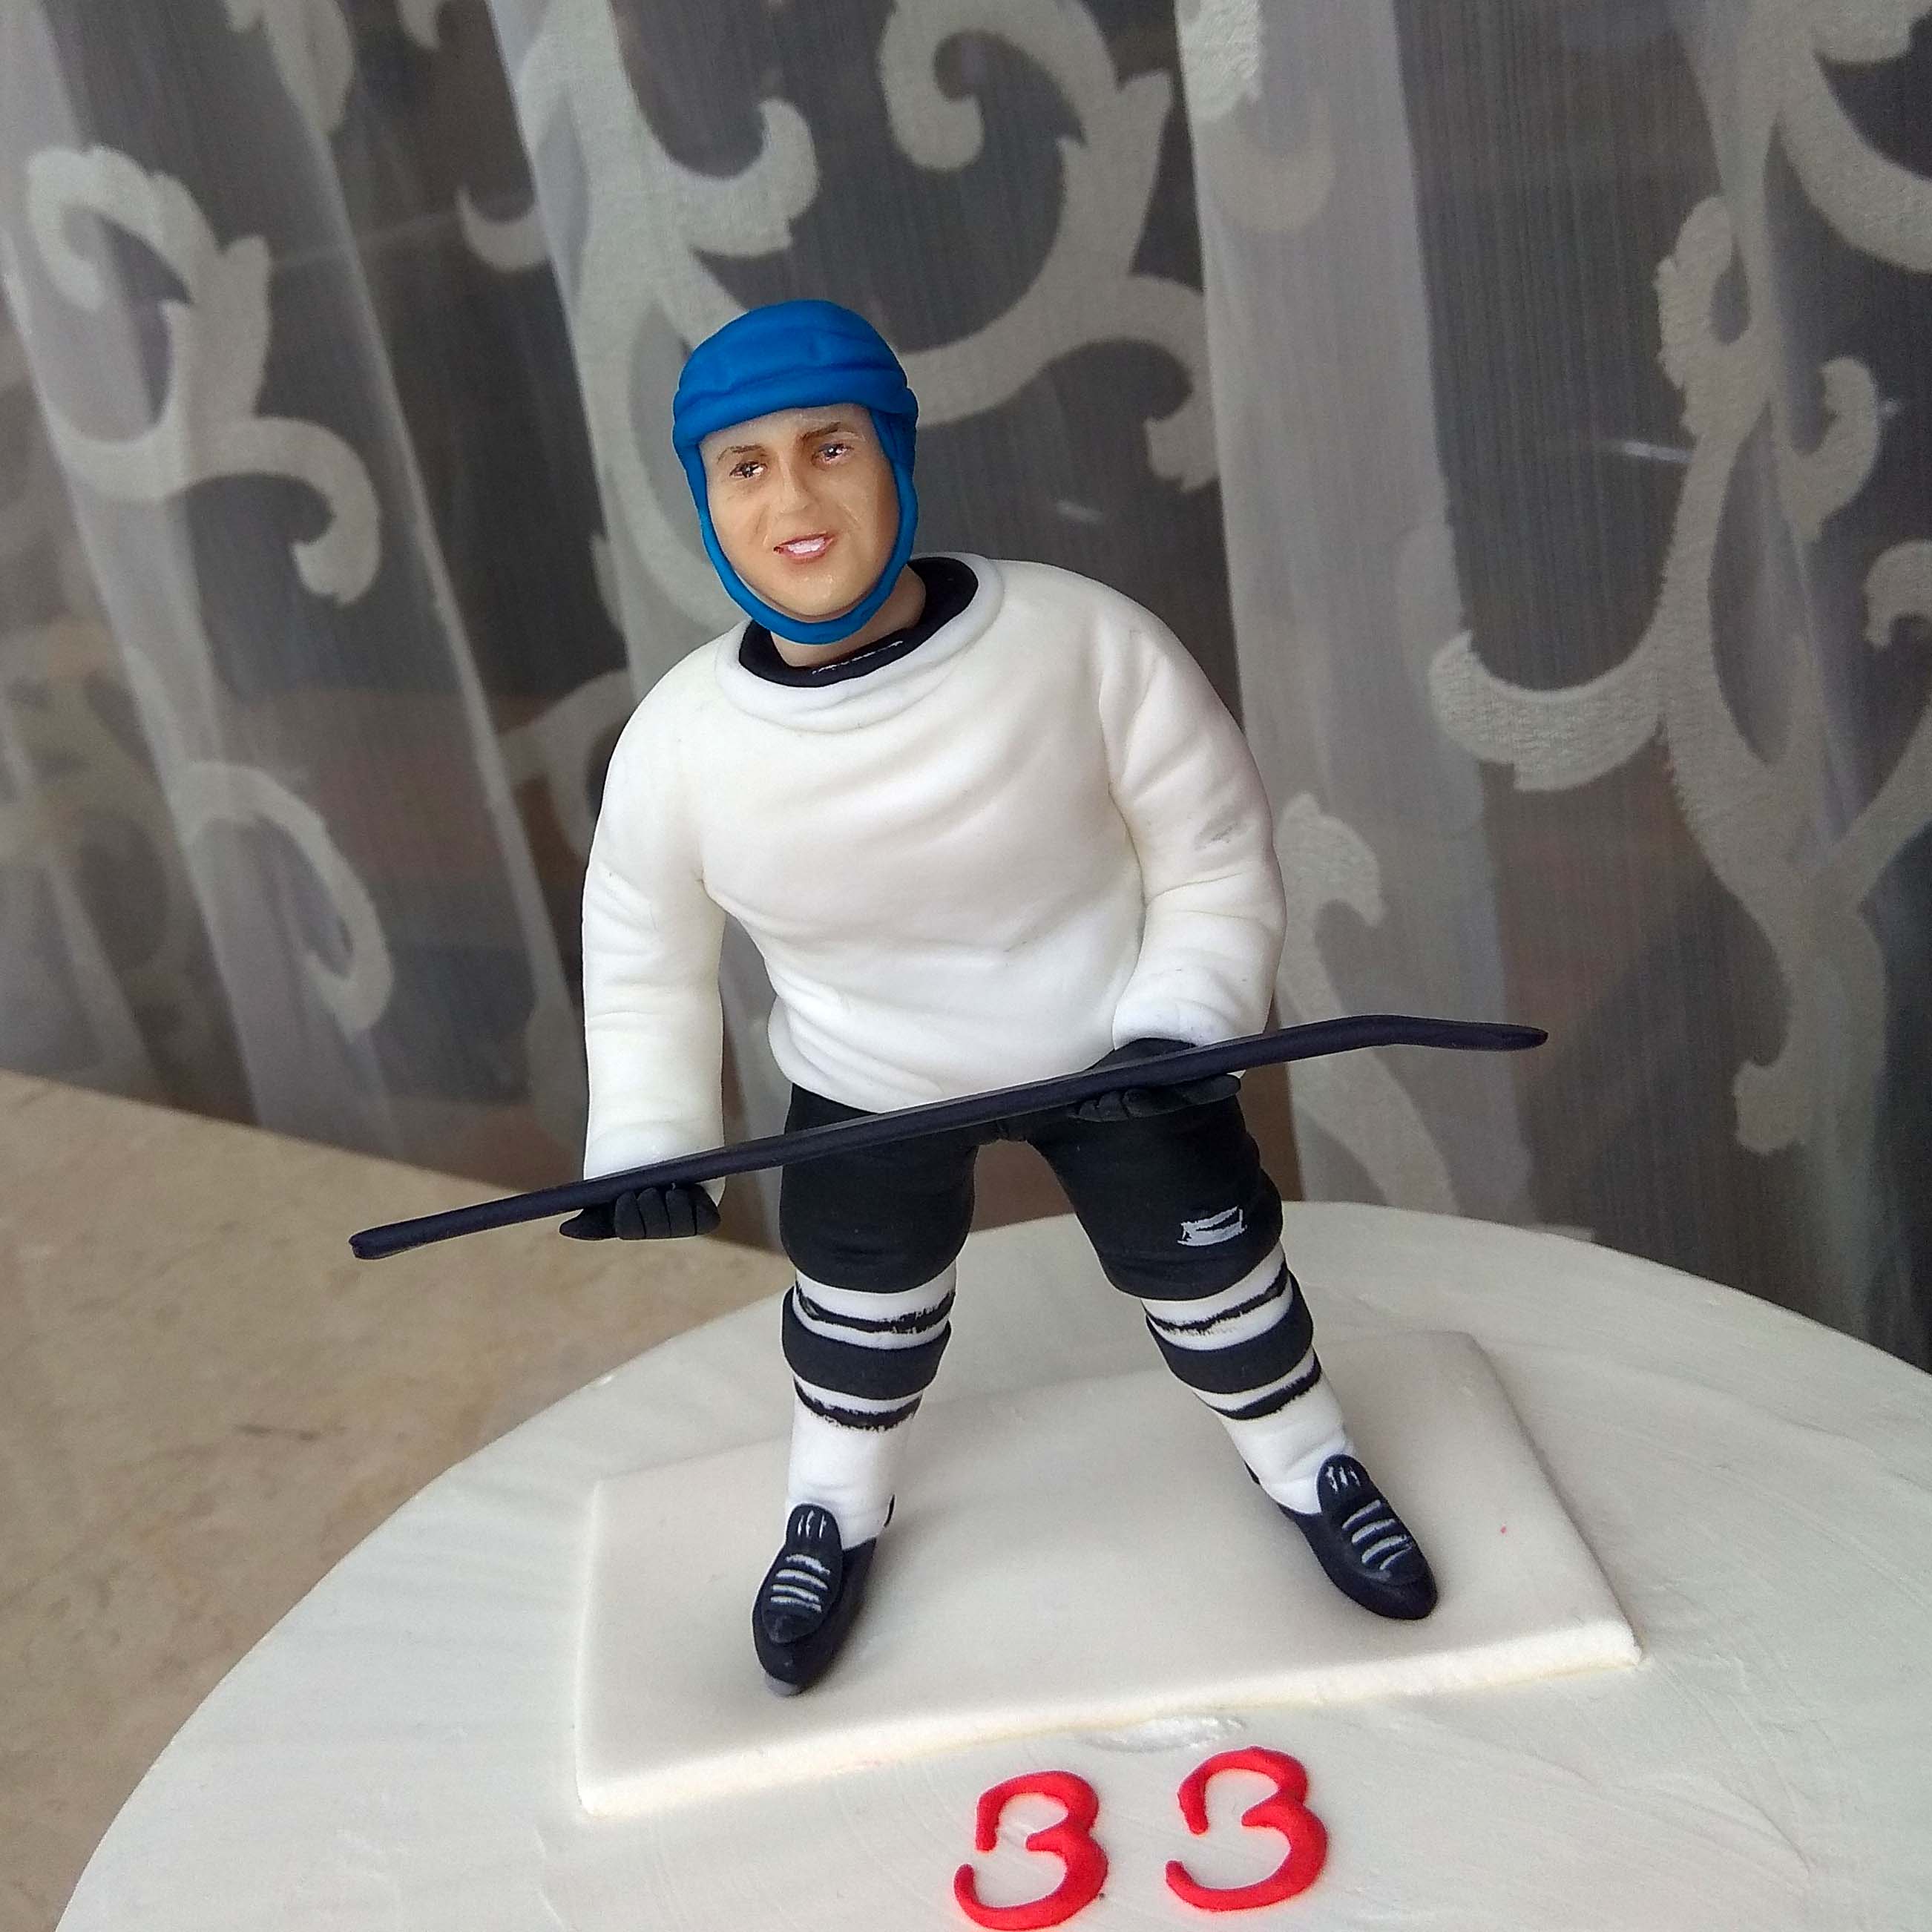 торт, мужчине, хоккей